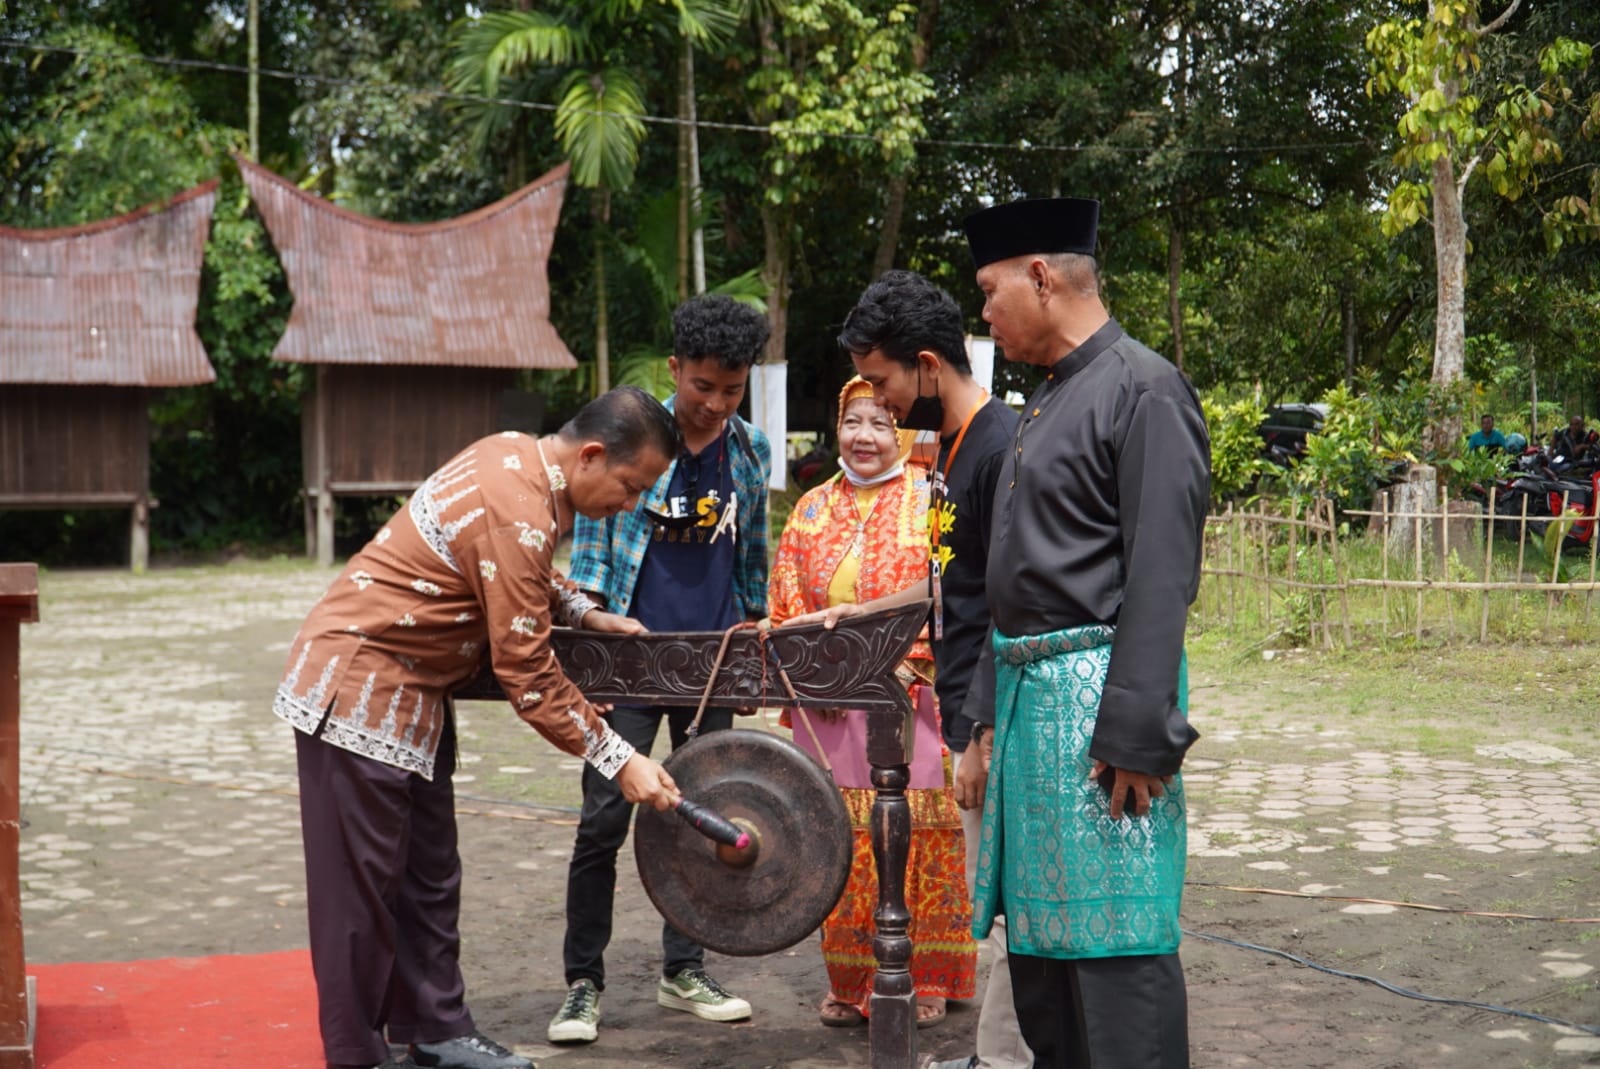 Festival Bagholek Godang Pulau Belimbing, Angkat dan Lestarikan Seni Budaya Menjadi Destinasi Wisata